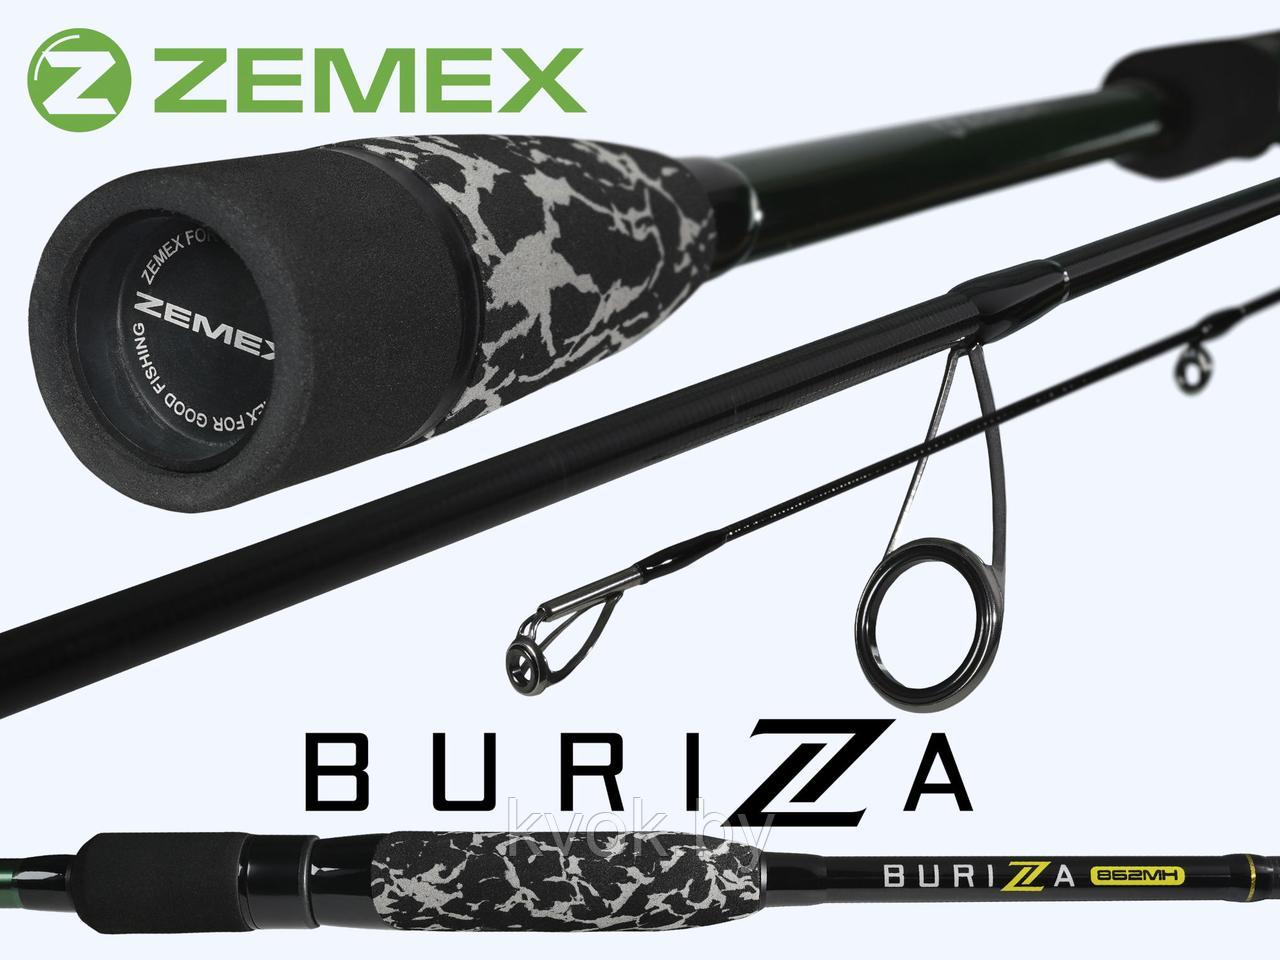 Спиннинг ZEMEX BURIZA 862MH 2.64 м тест: 8-35 гр.141 гр, фото 1